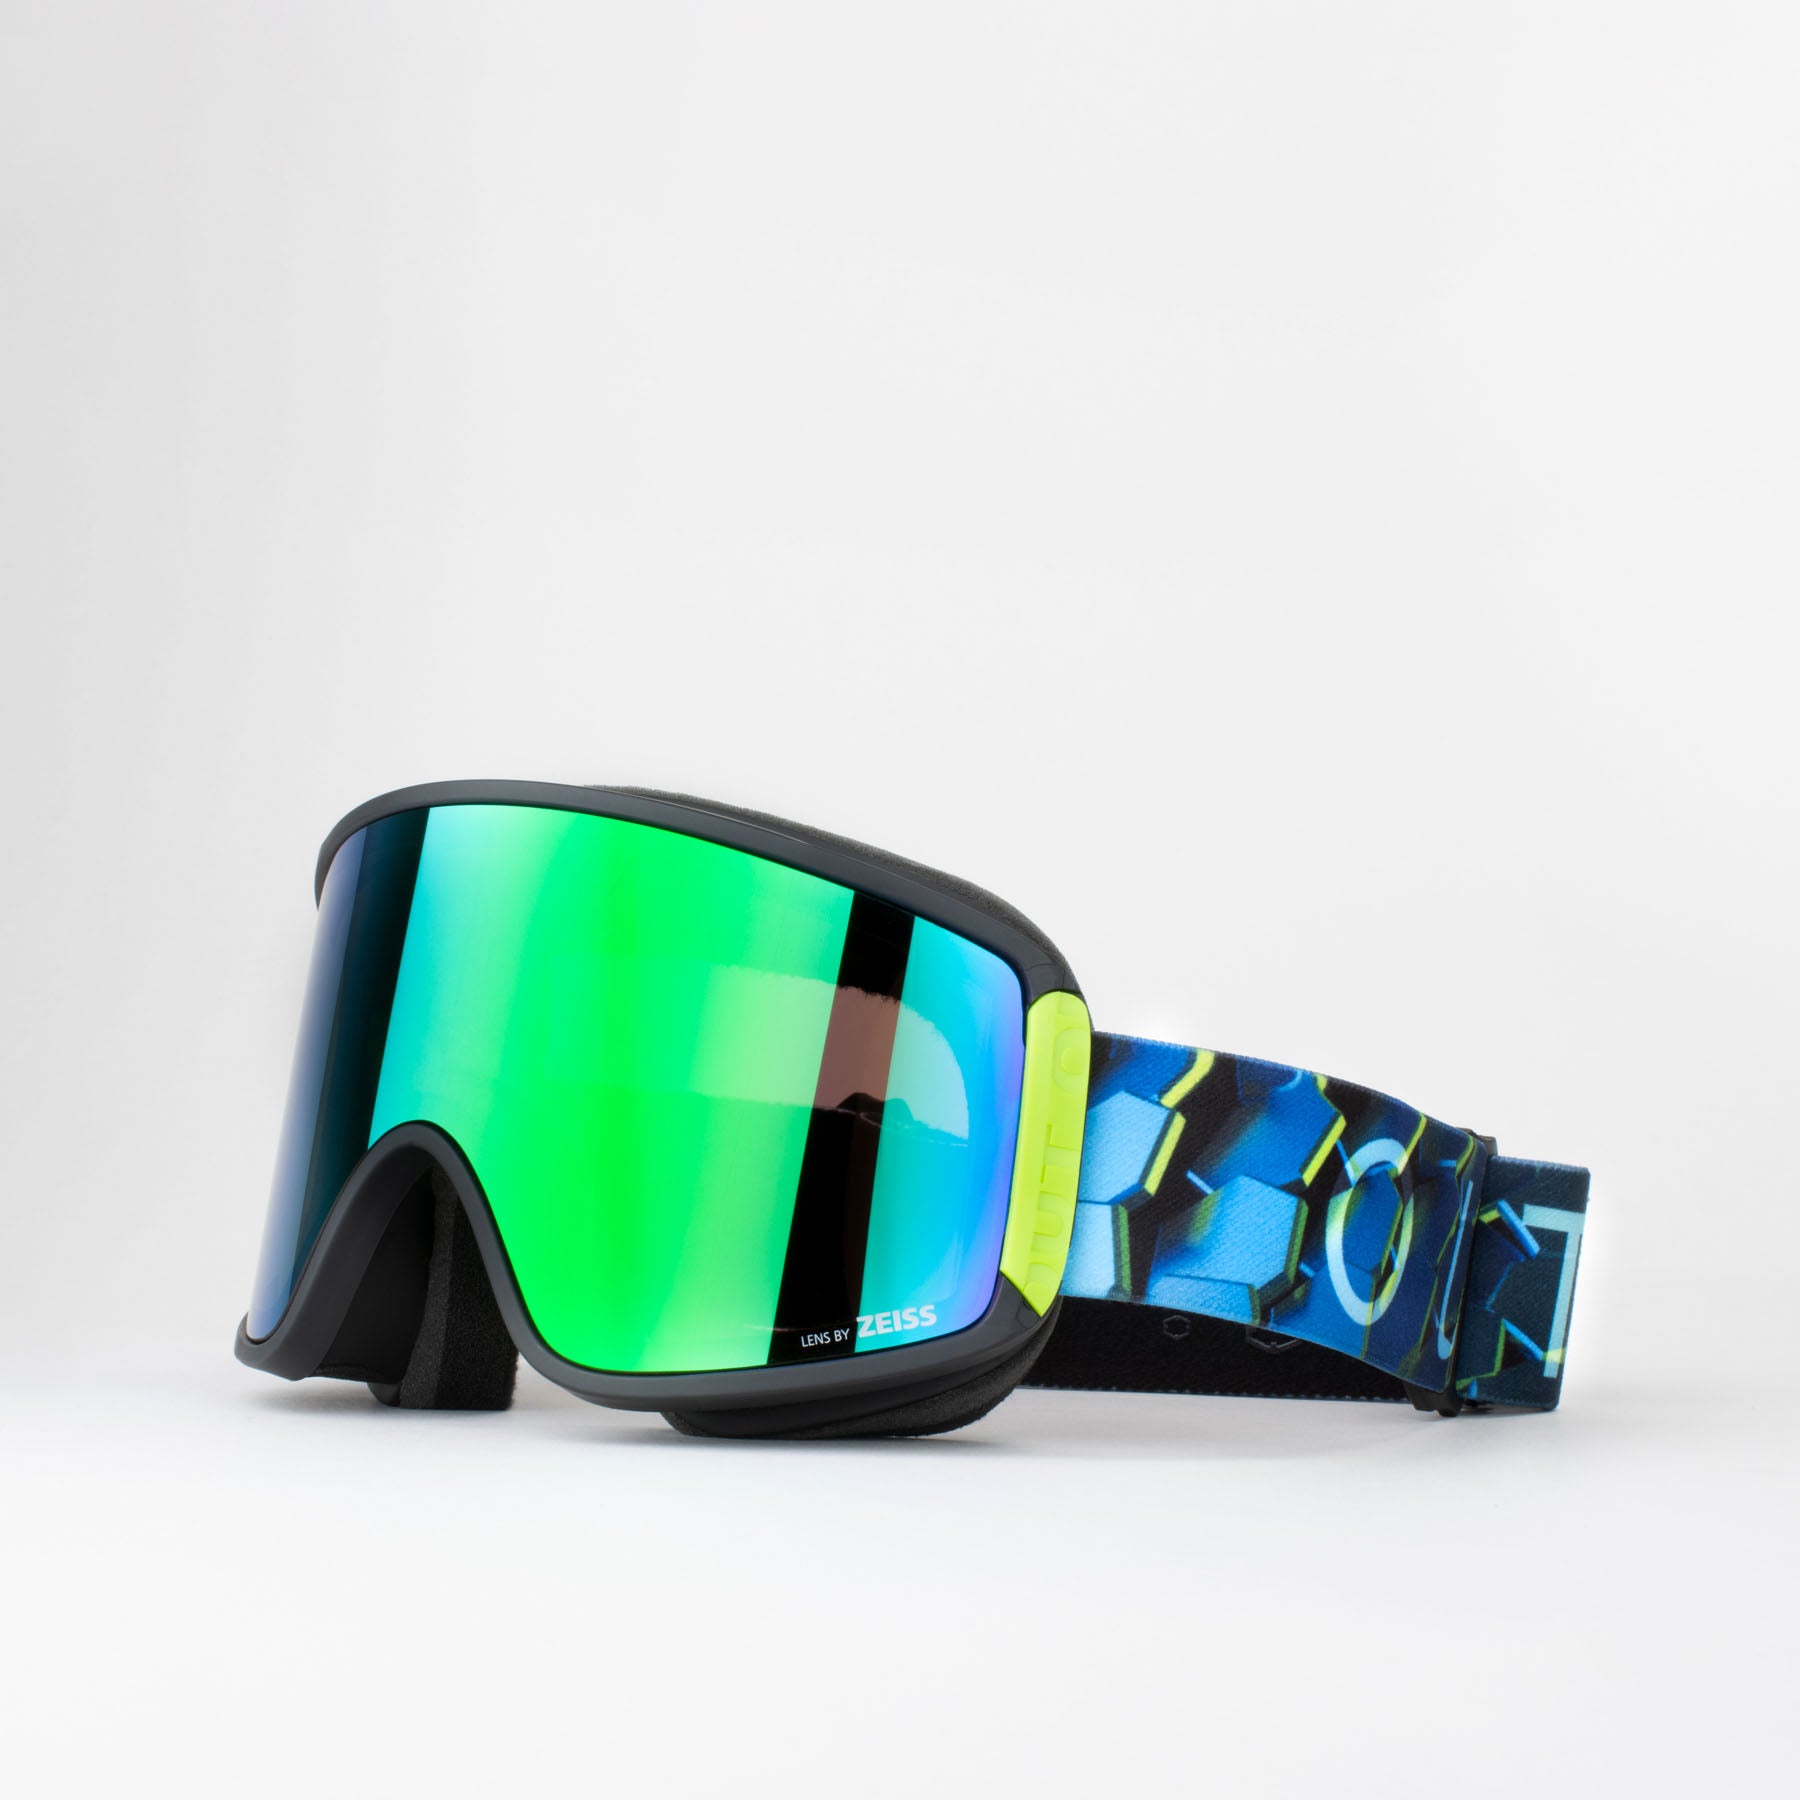 Occhiali sci e snowboard Mystic nero e giallo fluo - Ufo Plast